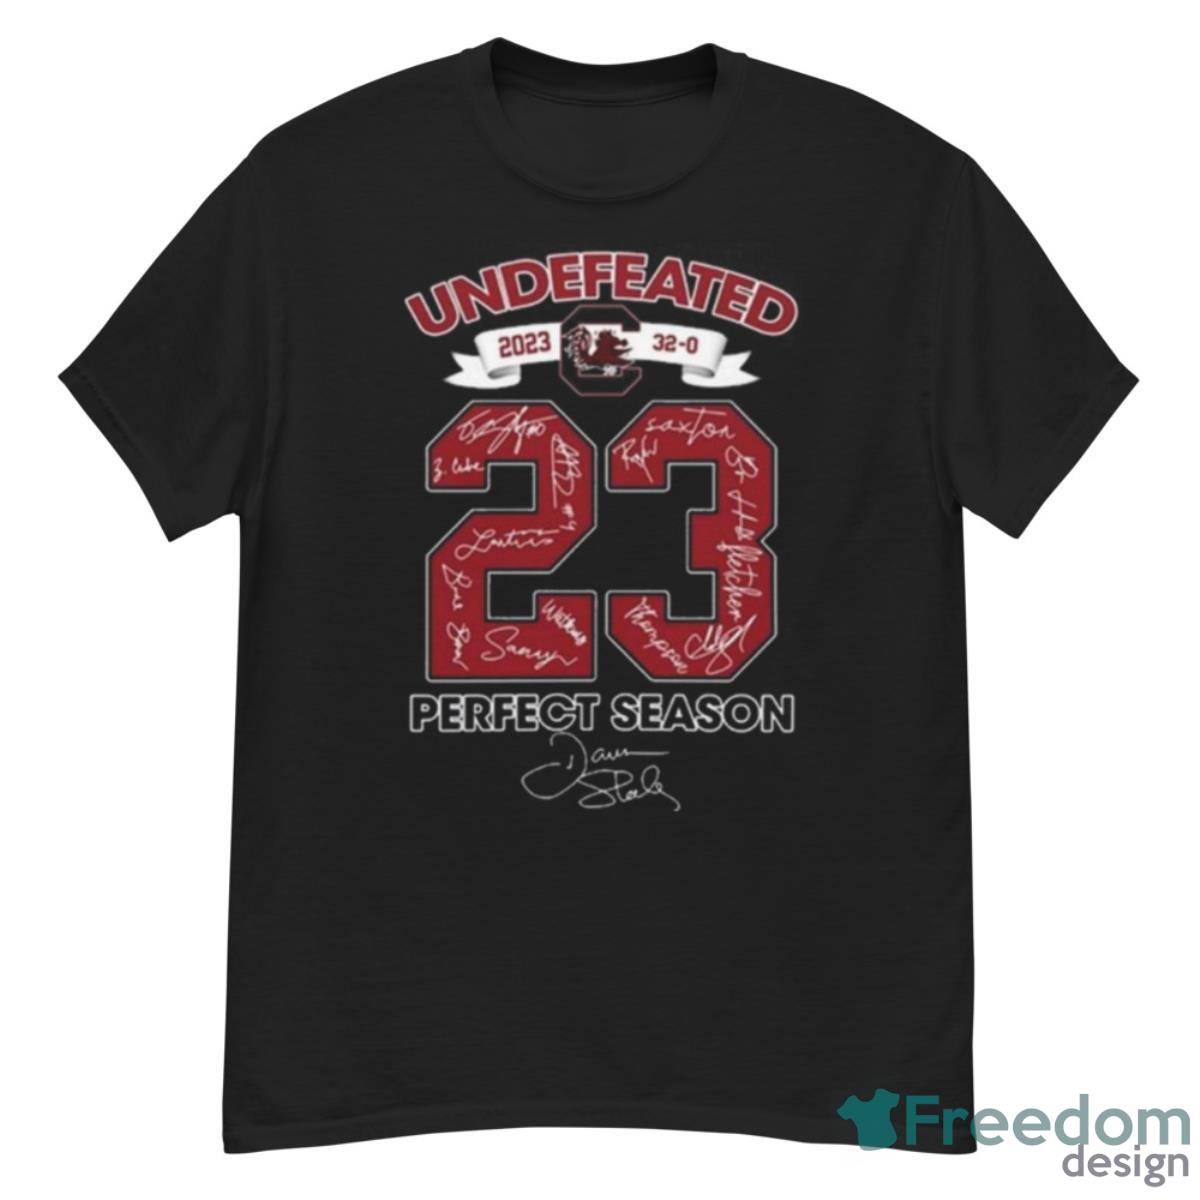 South Carolina Gamecocks Undefeated 2023 Perfect Season Signatures Shirt - G500 Men’s Classic T-Shirt